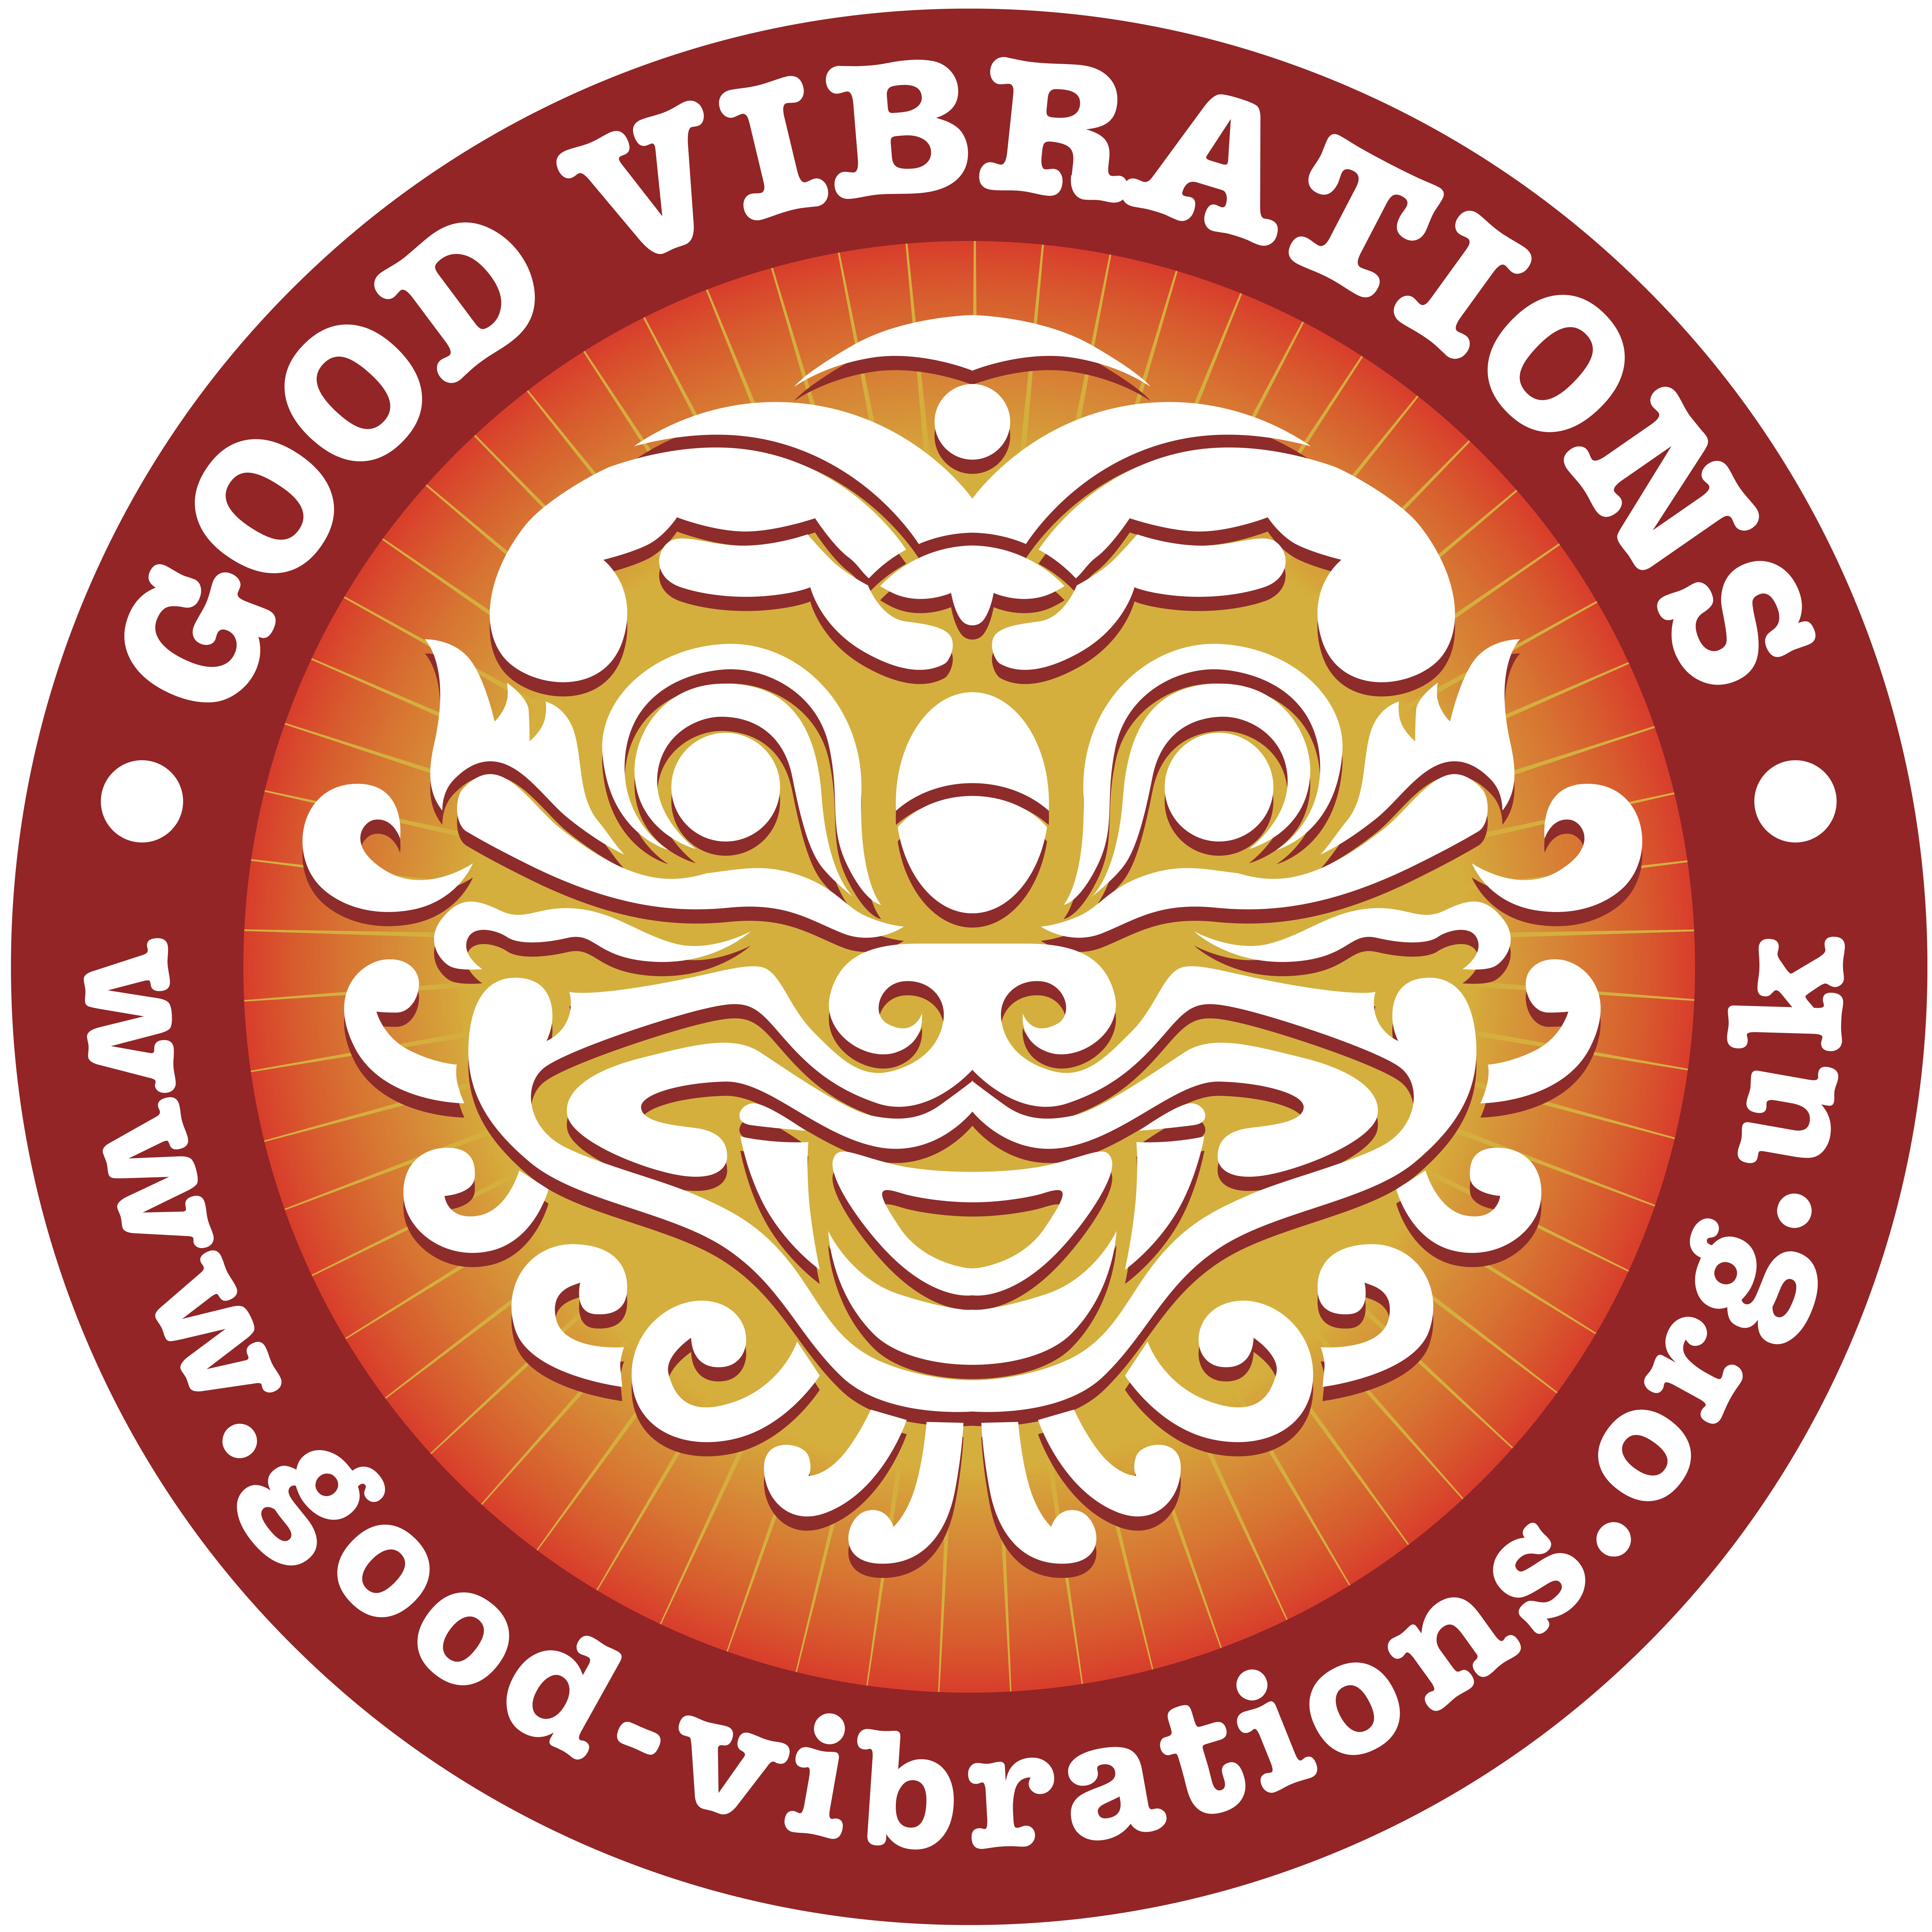 www.good-vibrations.org.uk